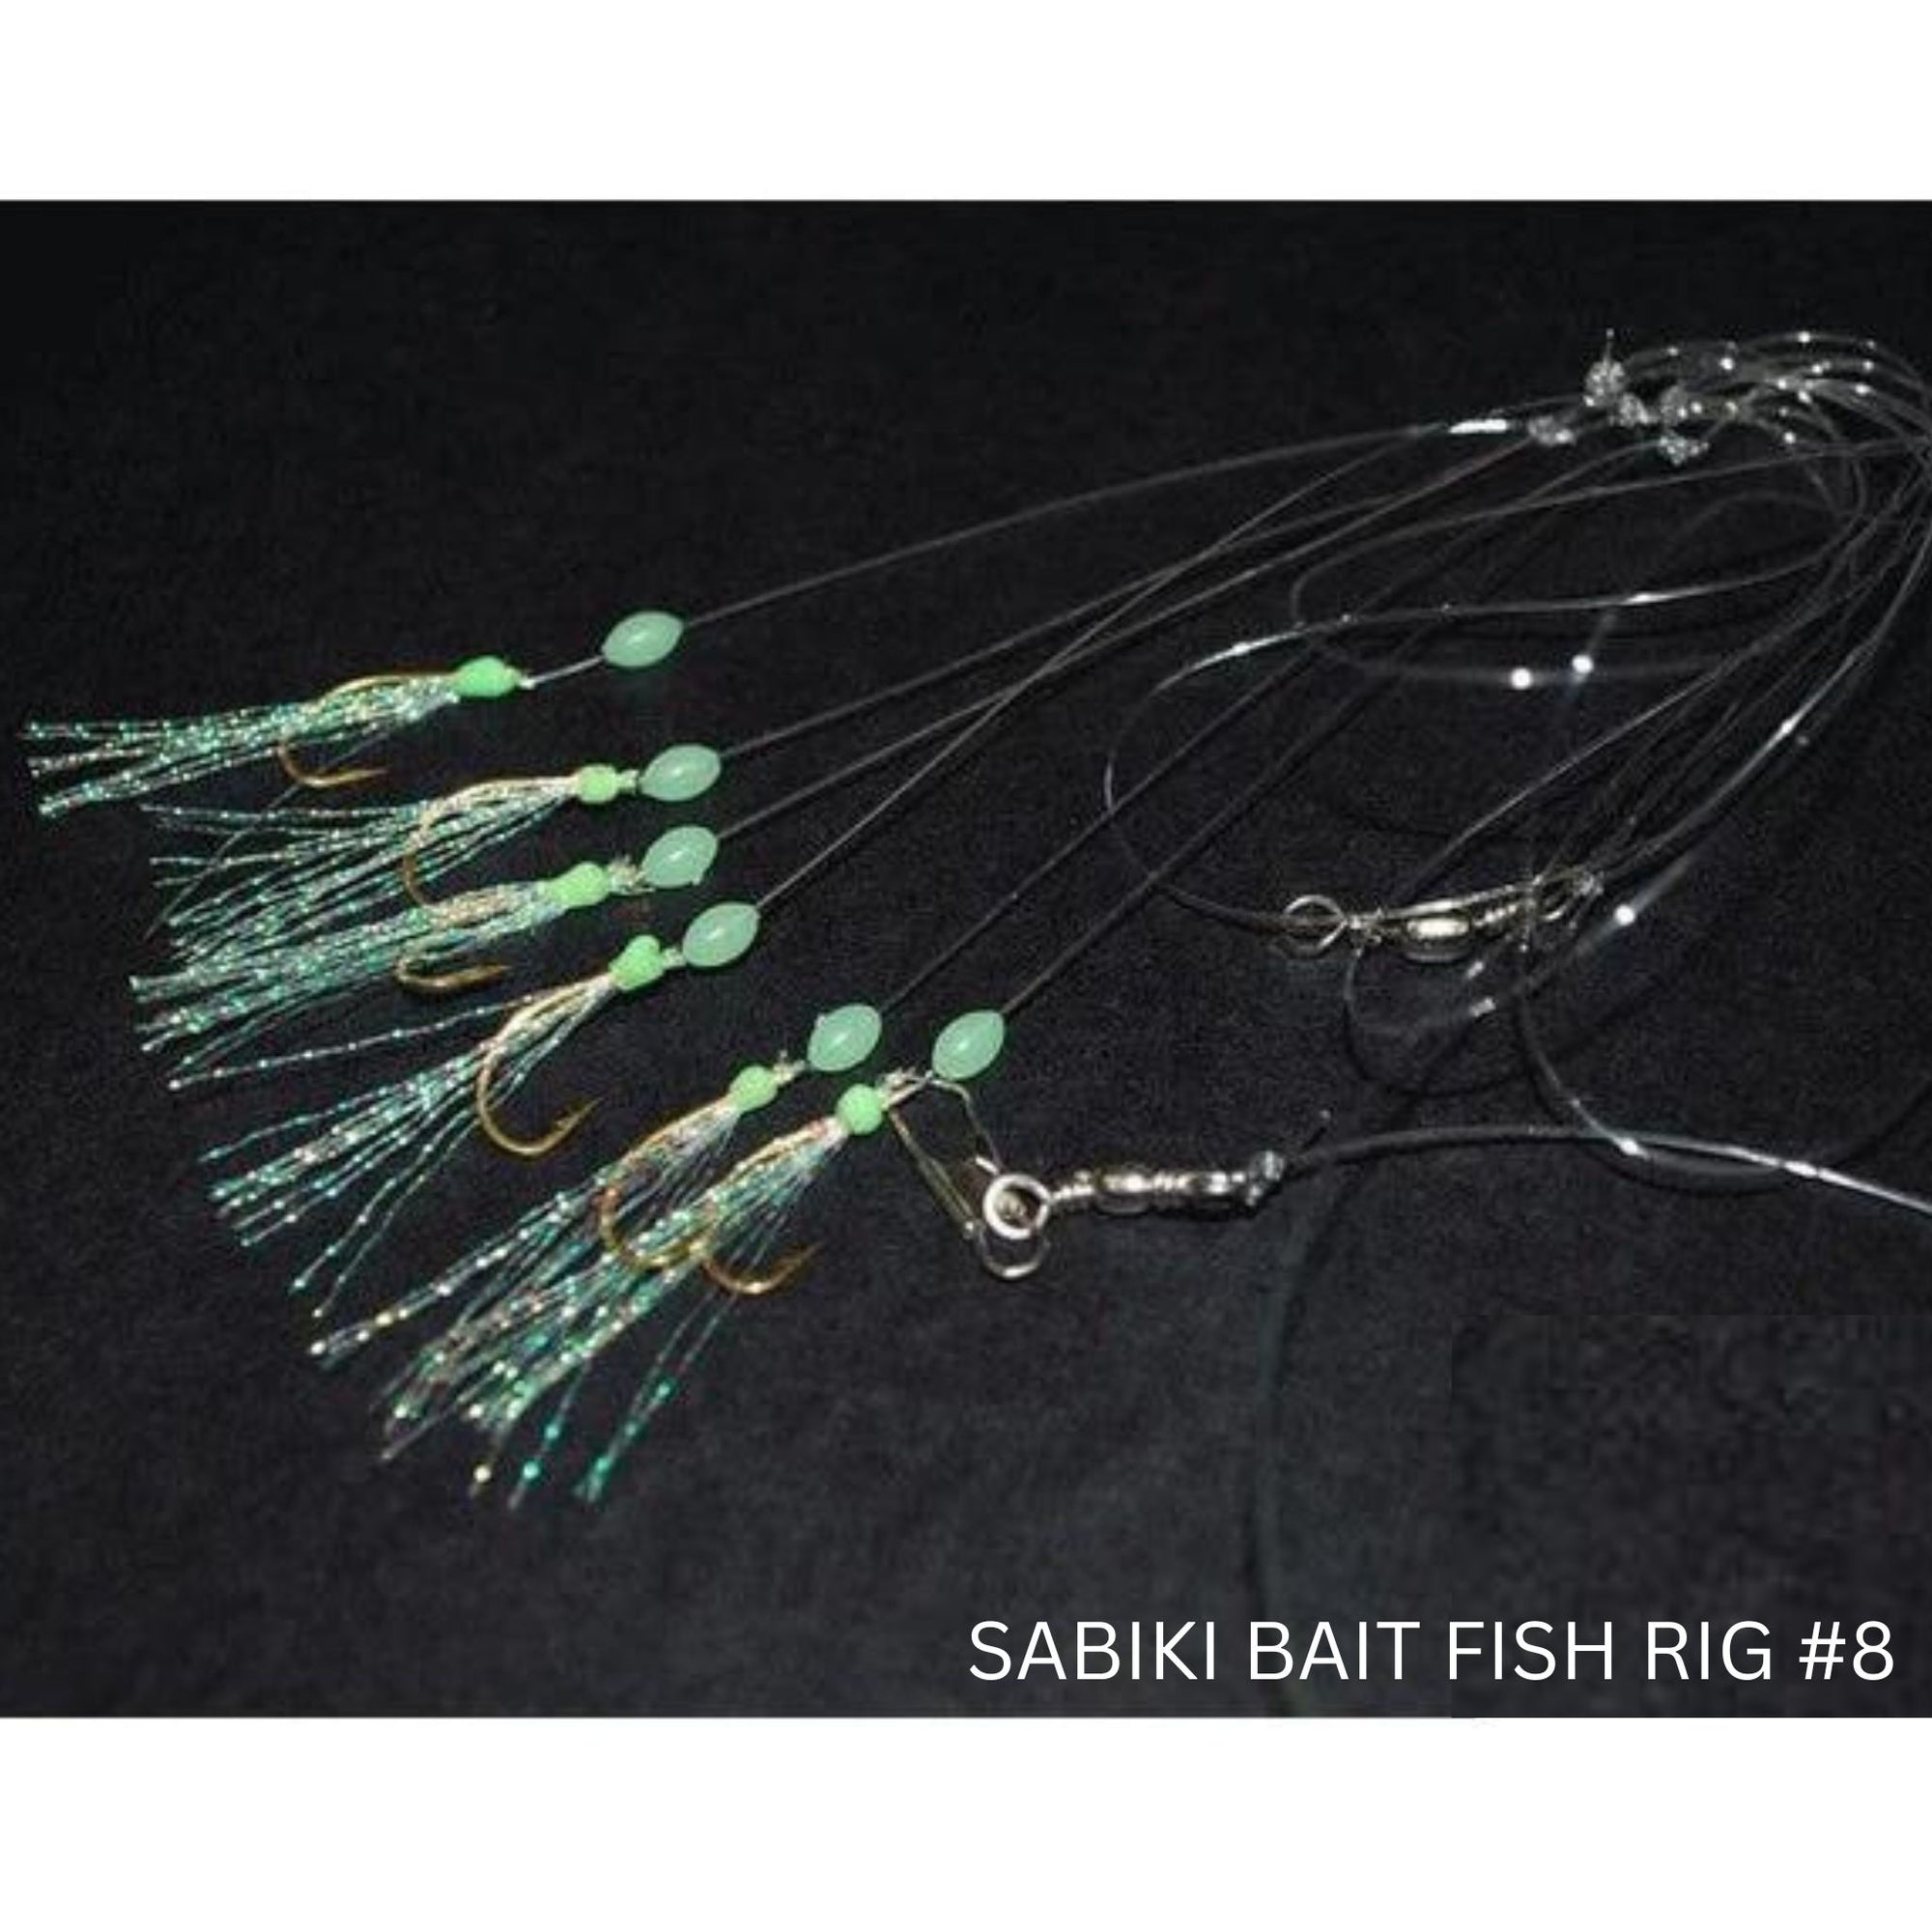 Sabiki Bait Fish Rig #8 - South East Clearance Centre